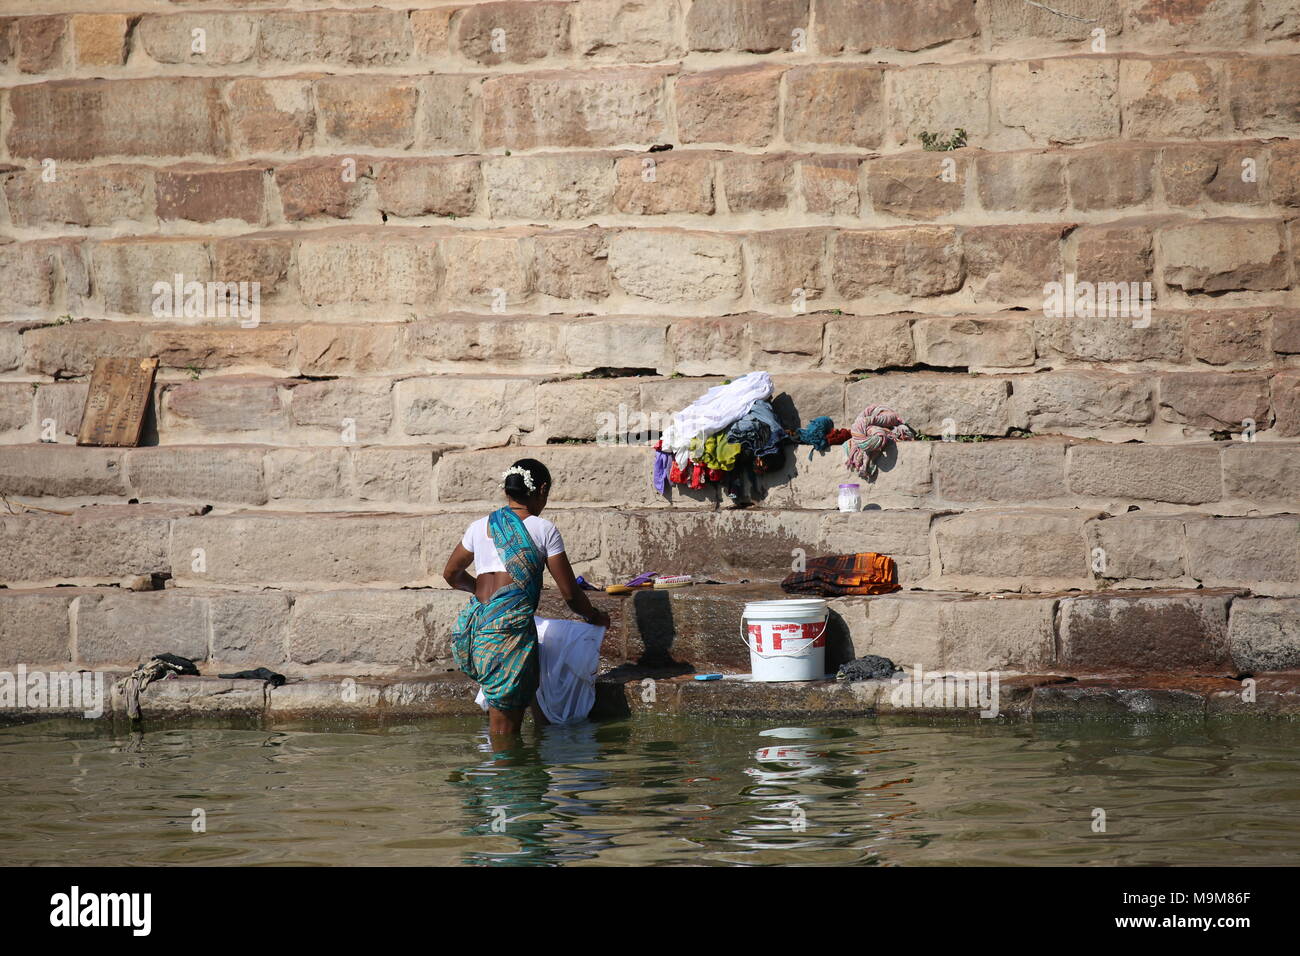 Femme indienne le lavage des vêtements et de la vaisselle sur le fleuve - inderin beim waschen von Kleidung und geschirr am fluss Banque D'Images